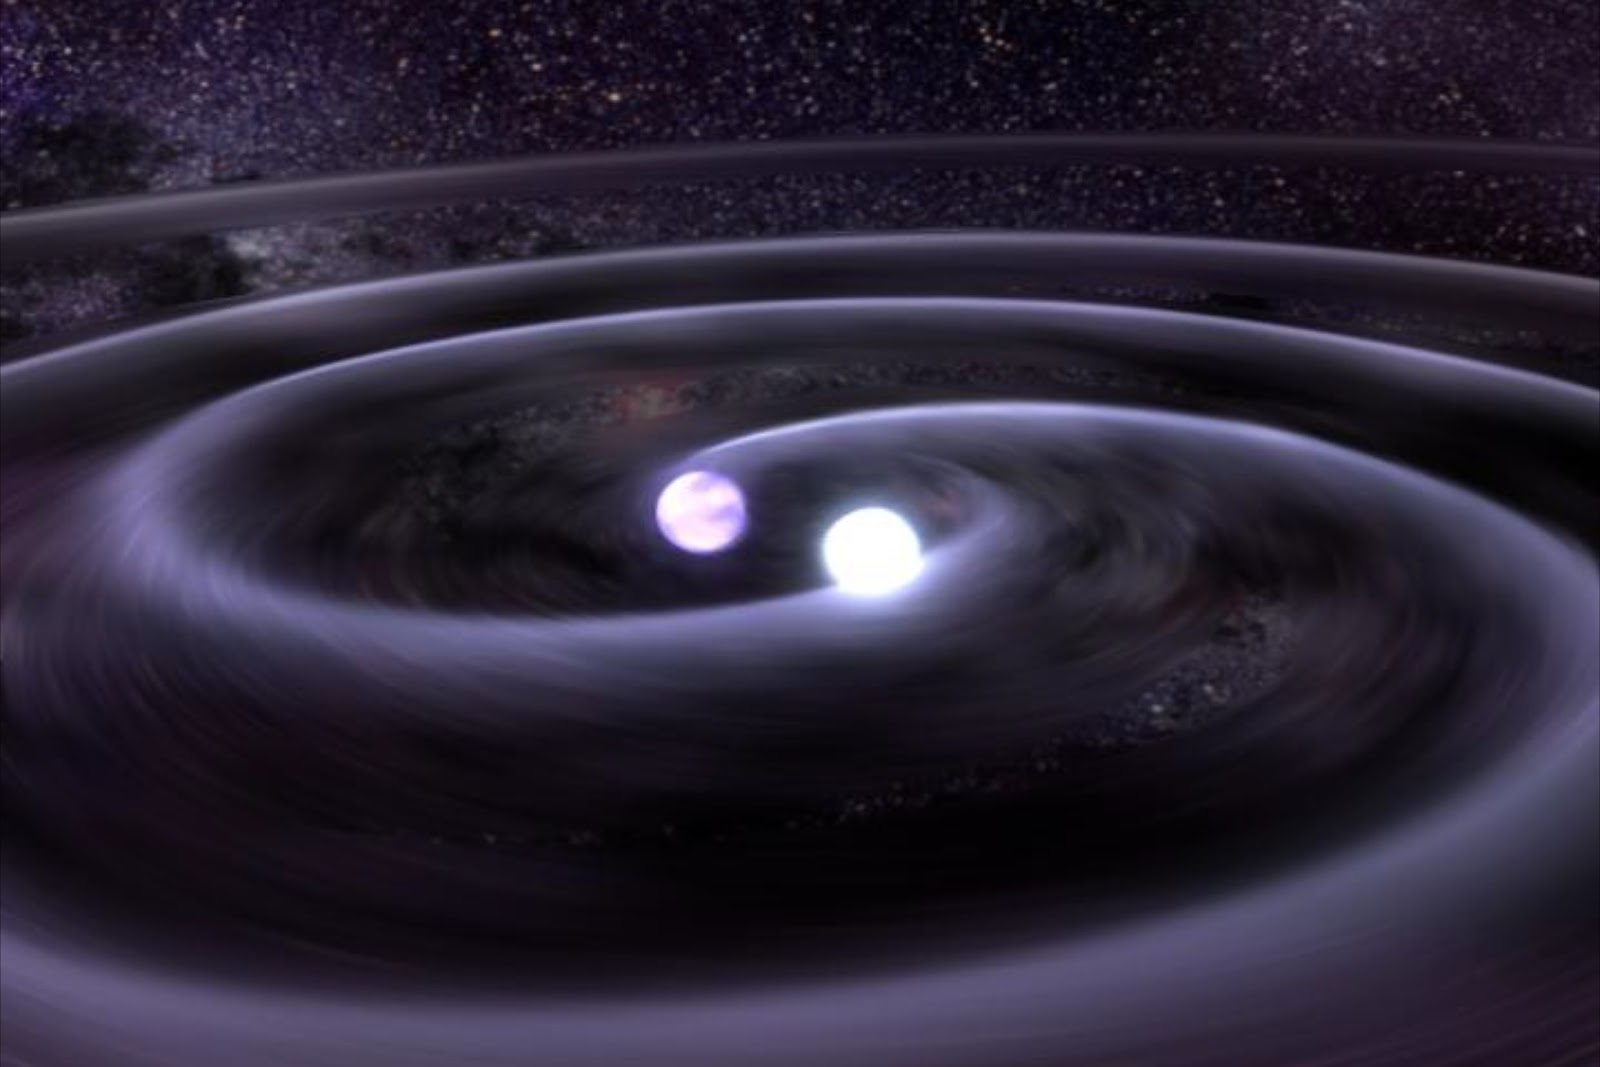 Resultado de imagen de Colisión de dos estrellas de neutrones